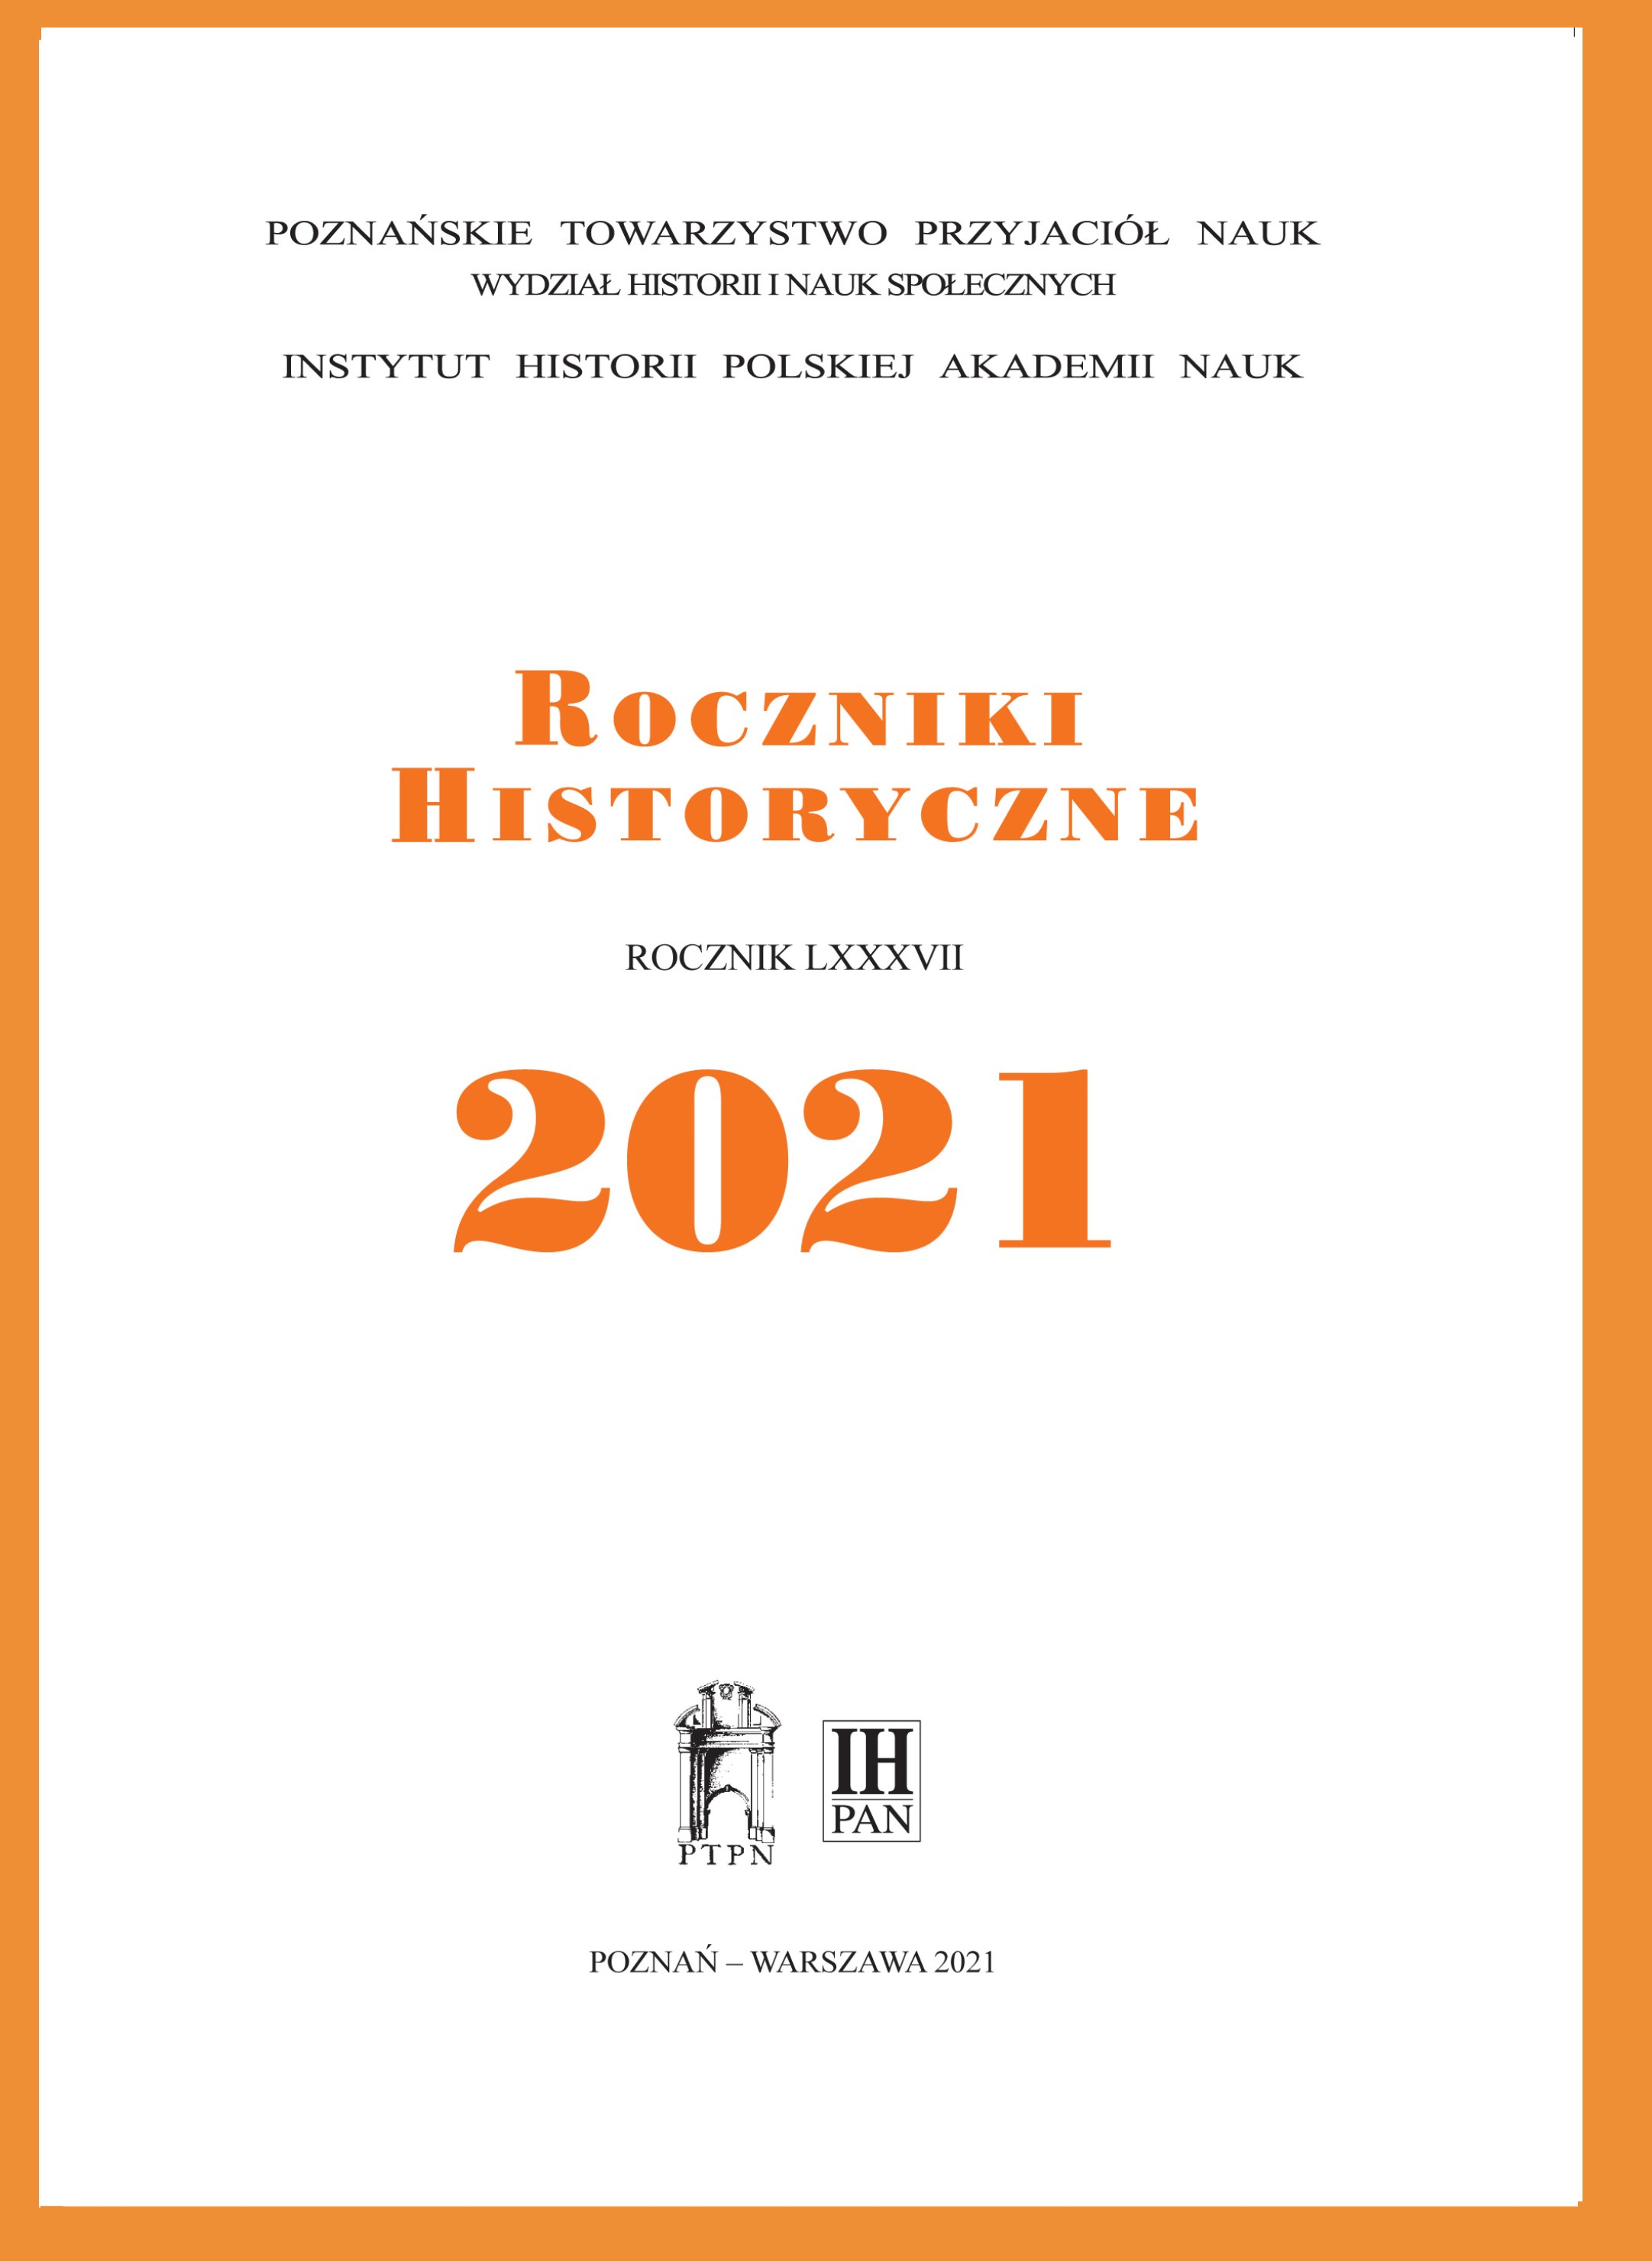 Charakter procesu polsko-krzyżackiego z lat 1320-1321